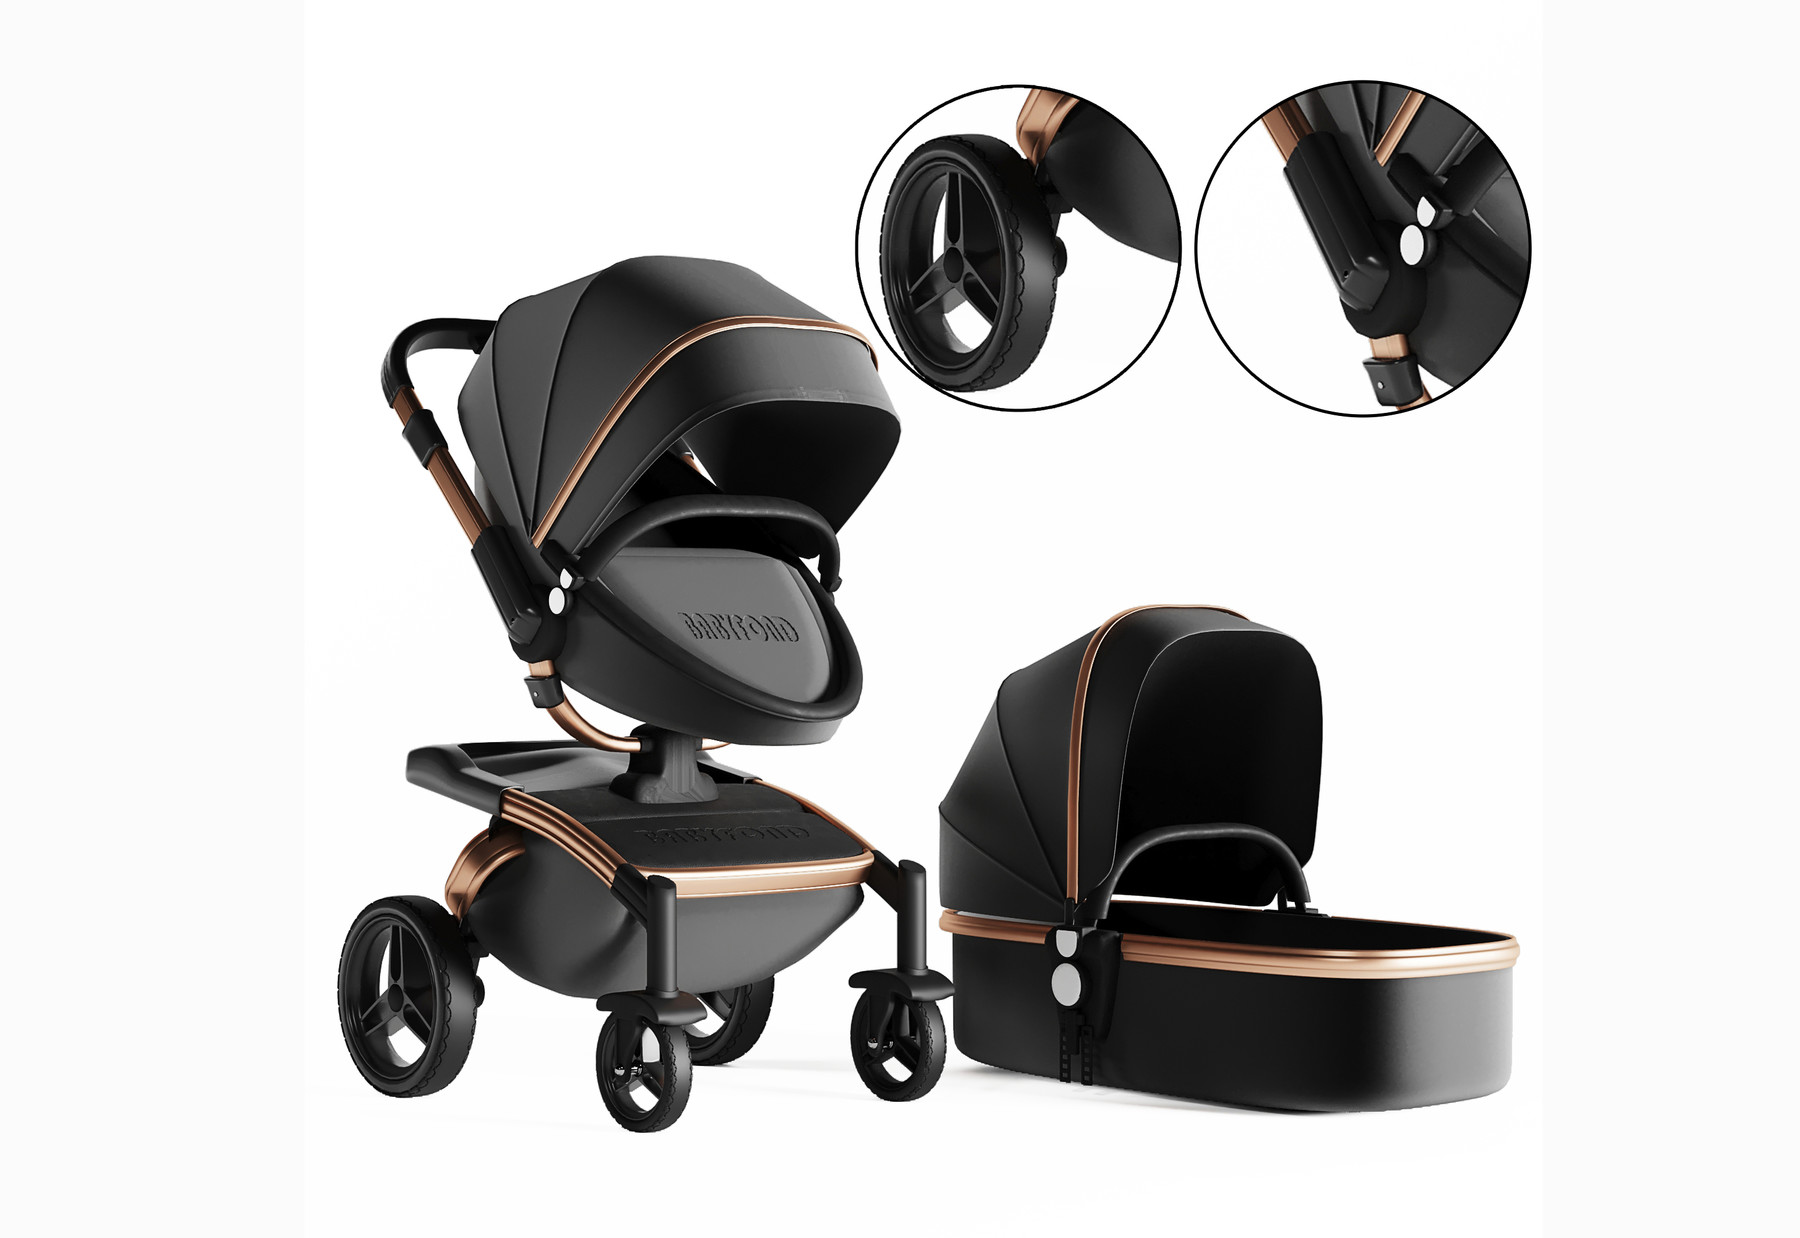 ArtStation - 3dasset babyfond stroller and carriage | Resources